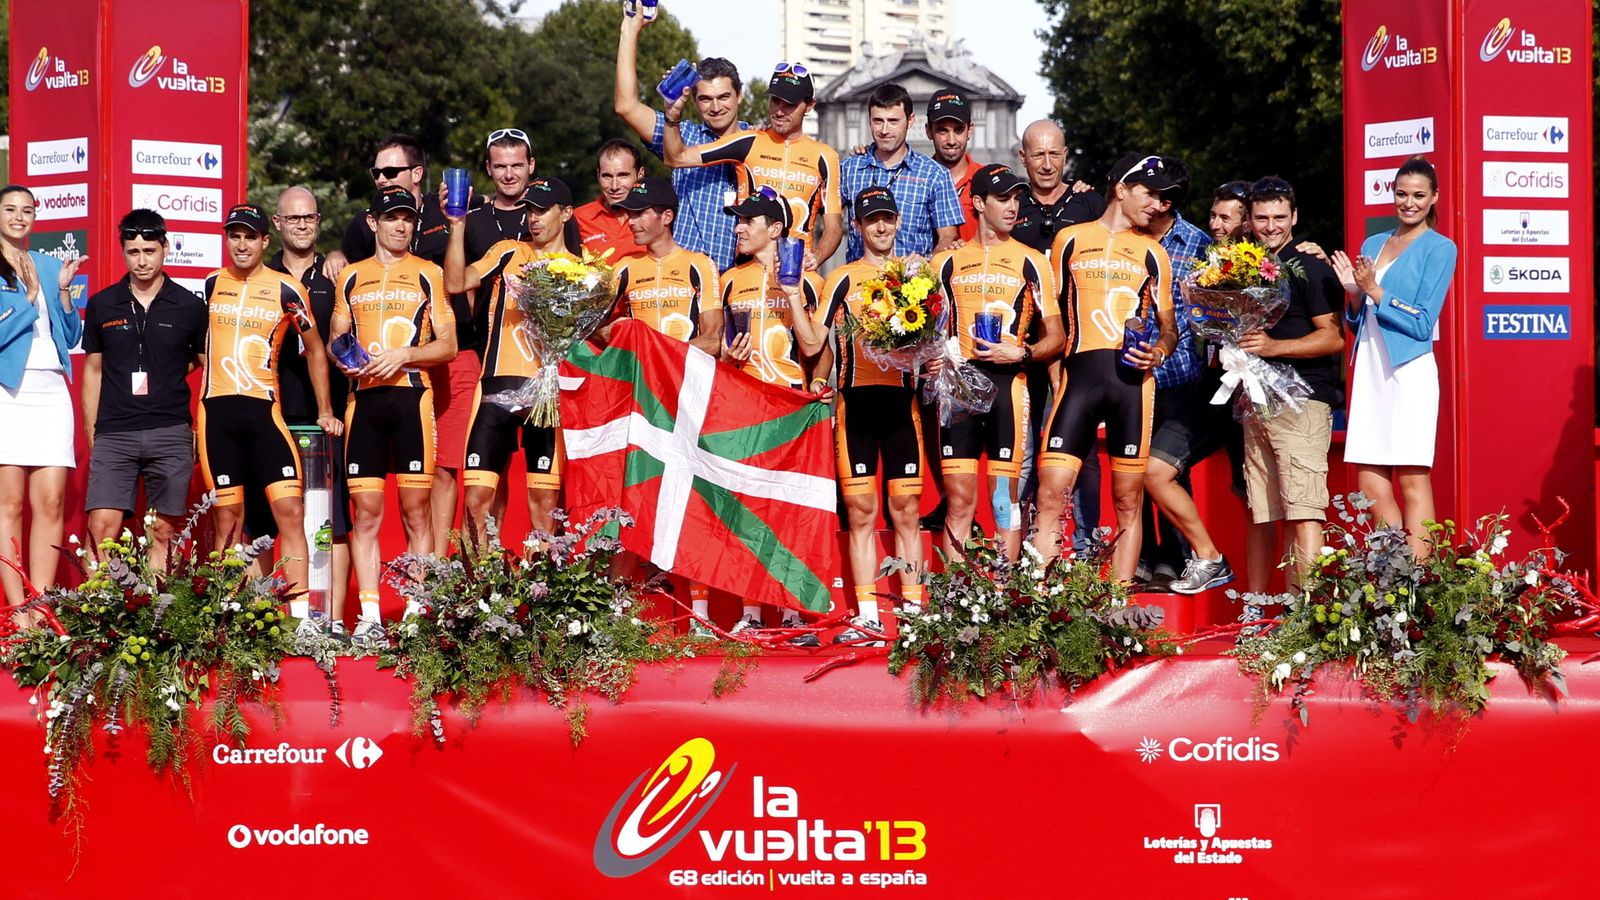 Foto: El equipo vasco, Euskaltel,recibiendo el premio como el mejor equipo de la Vuelta Ciclista a España en 2013. (EFE)